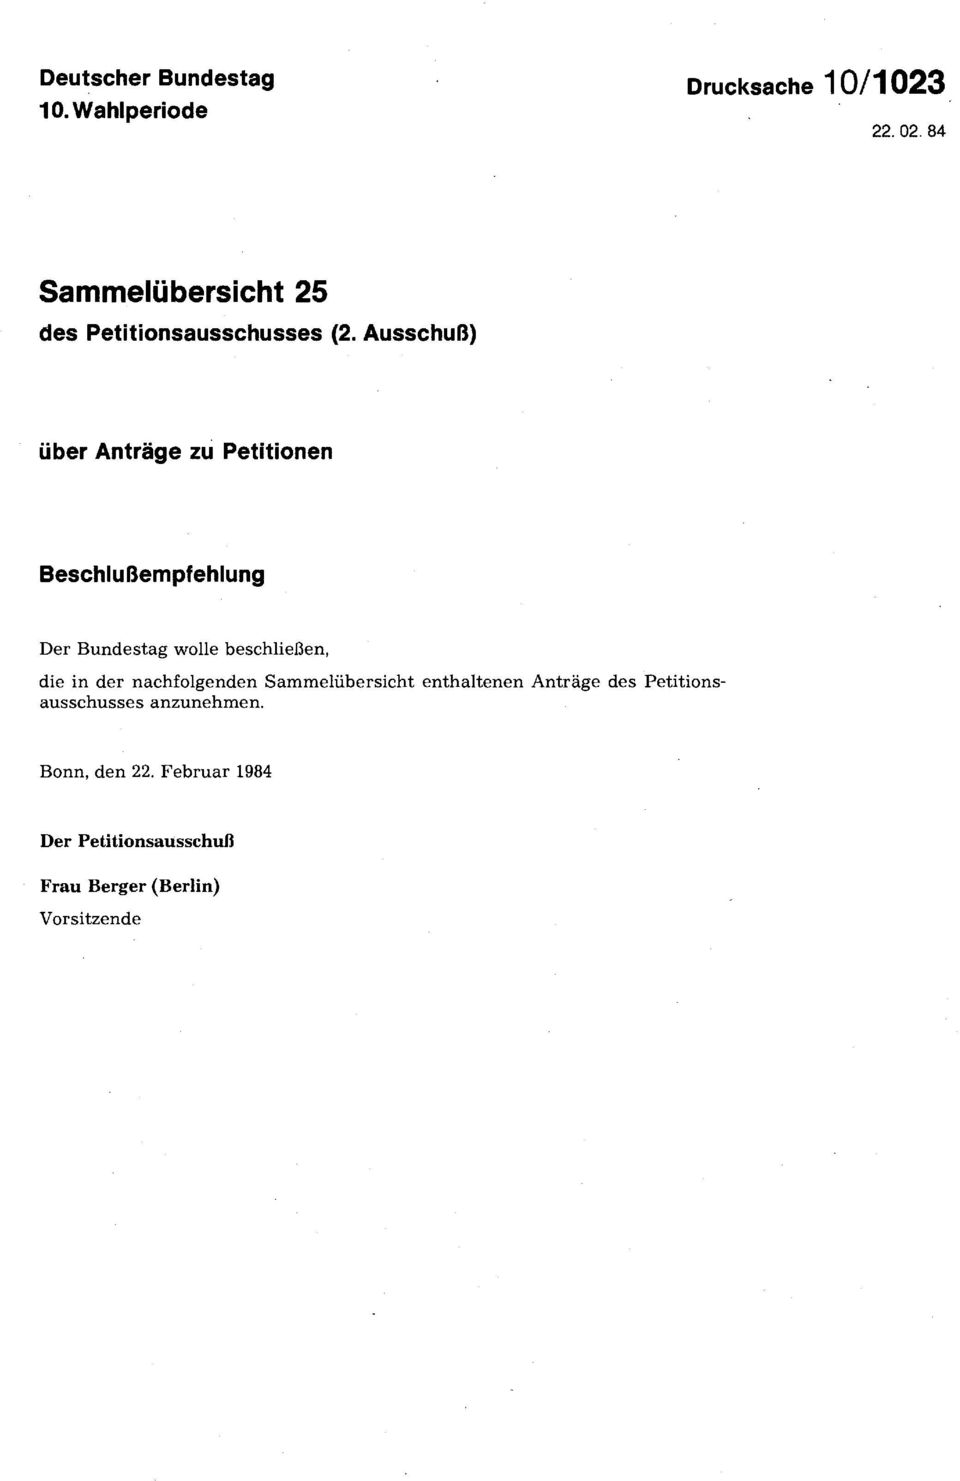 Ausschuß) über Anträge zu Petitionen Beschlußempfehlung Der Bundestag wolle beschließen, die